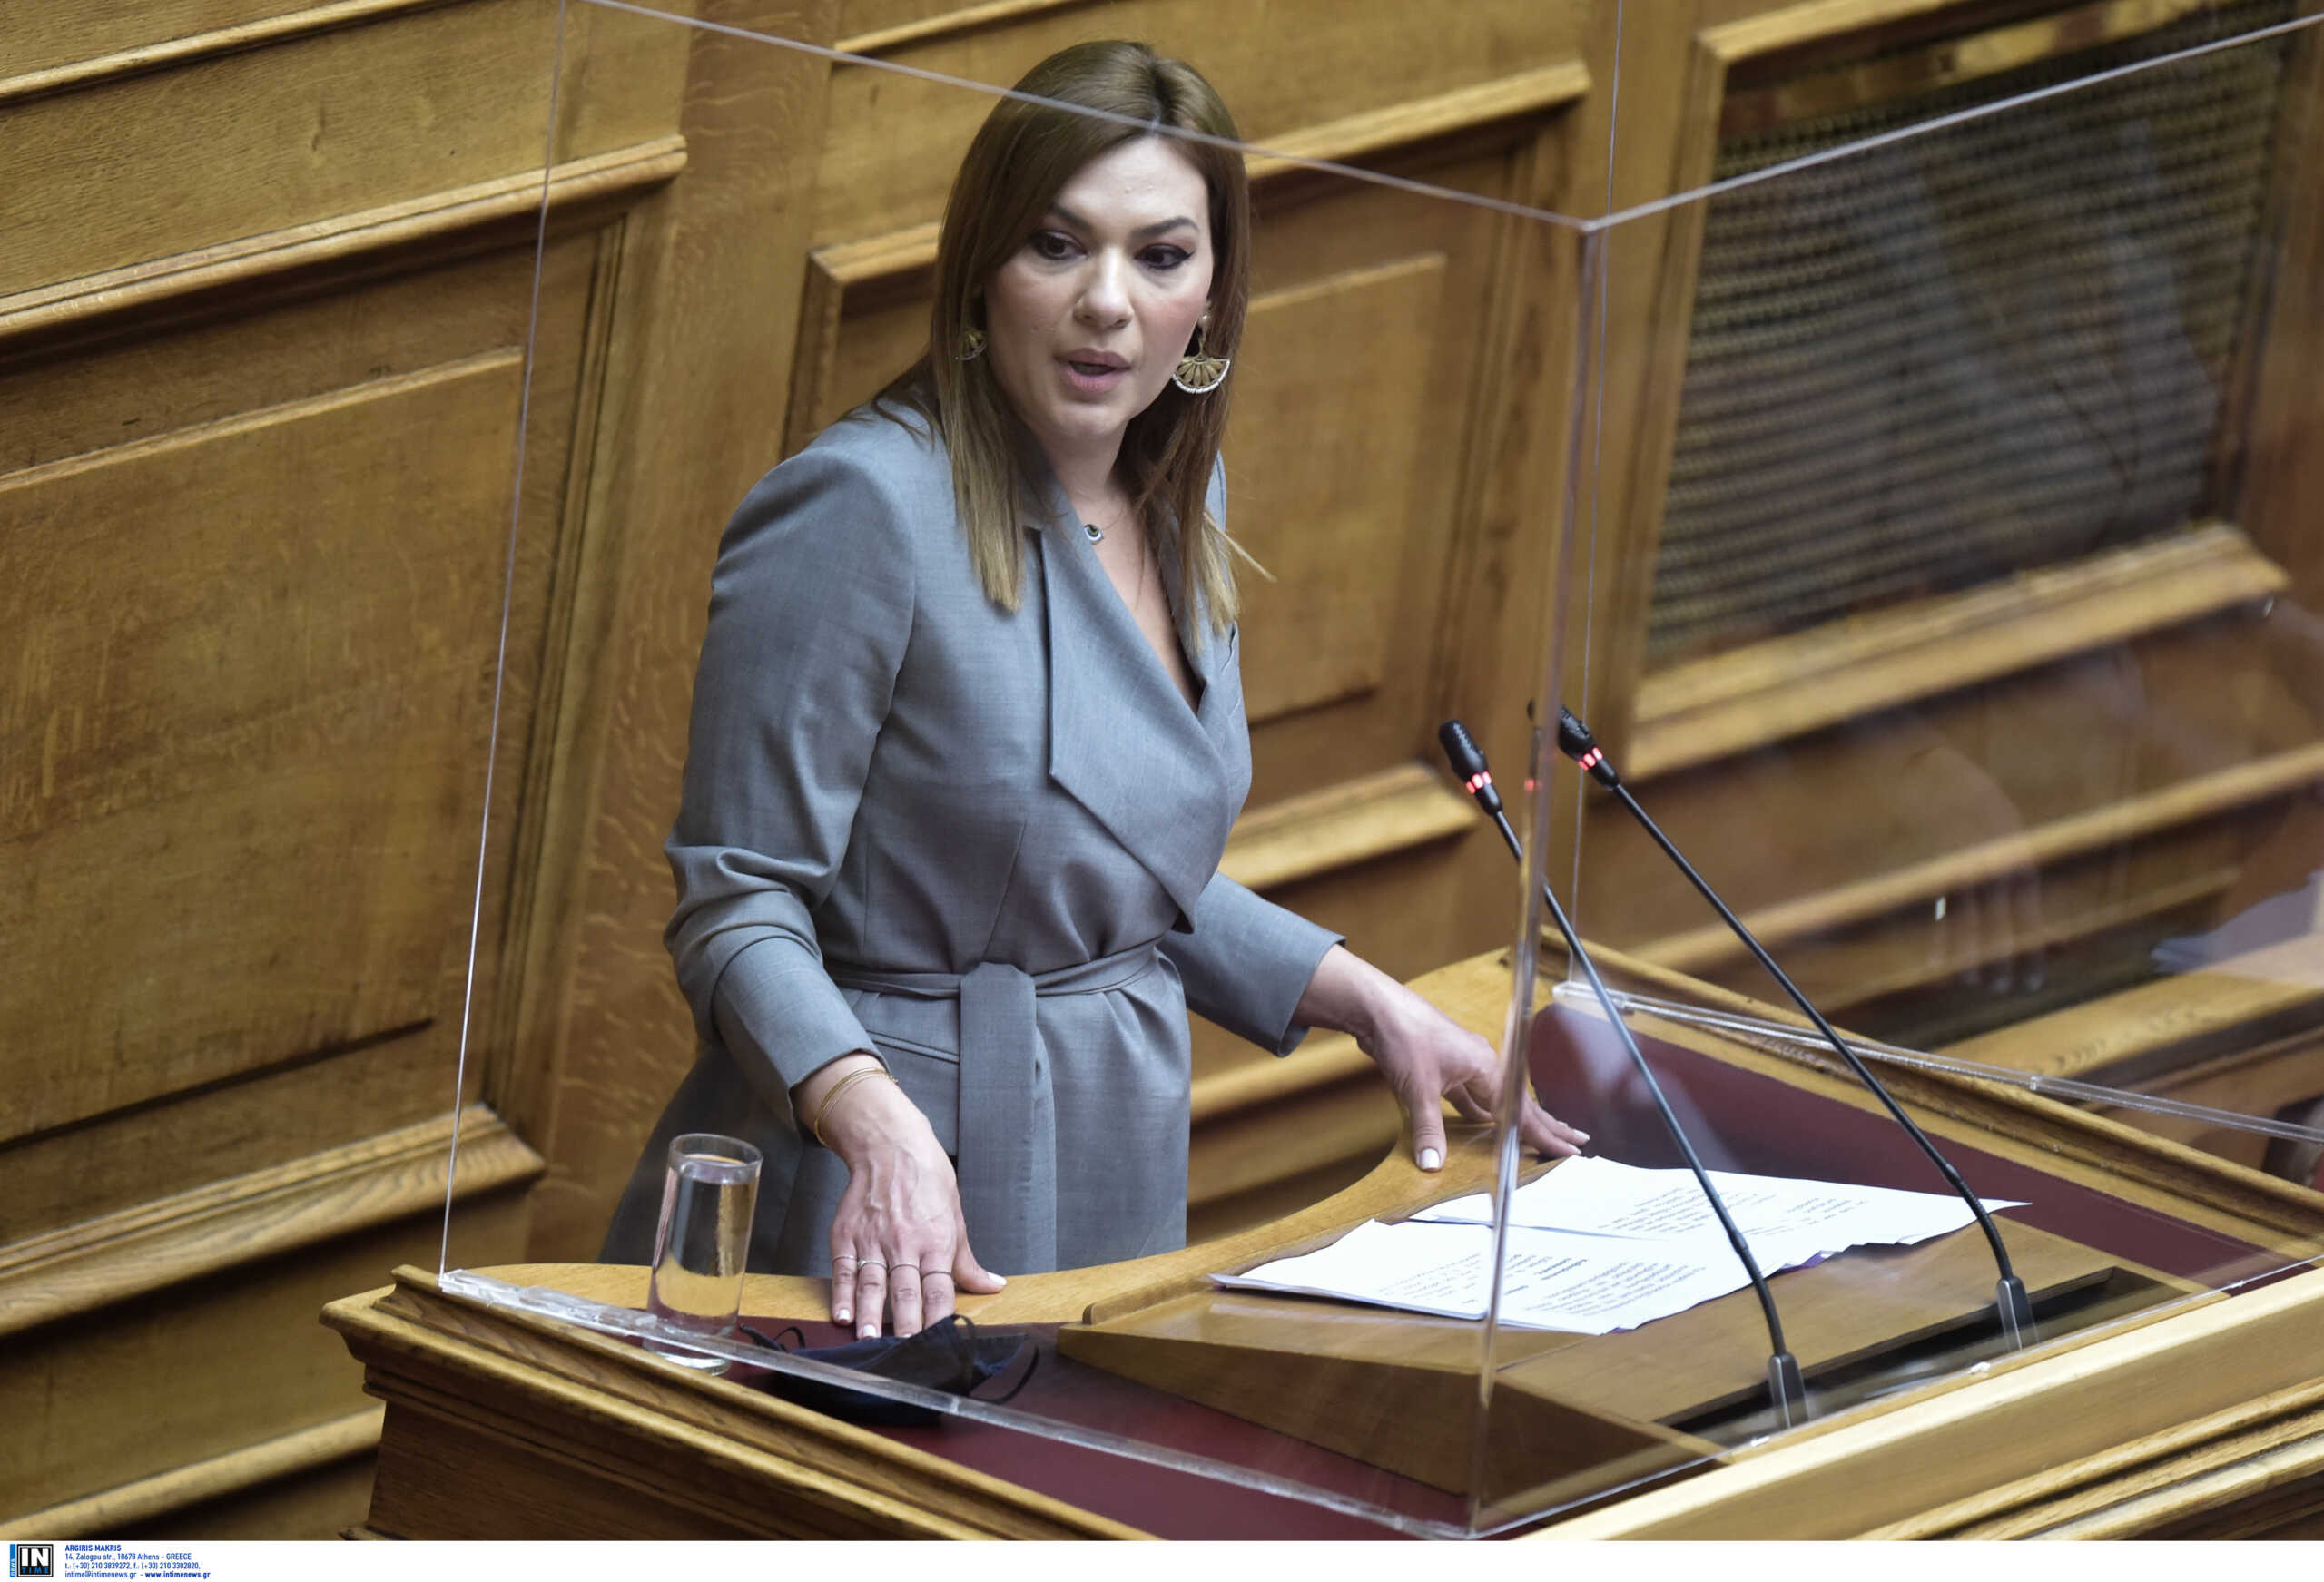 Τέμπη: Η βουλευτής της ΝΔ Στέλλα Μπίζιου καταγγέλλει ότι «επιχειρούν να την συνδέσουν με τον σταθμάρχη»